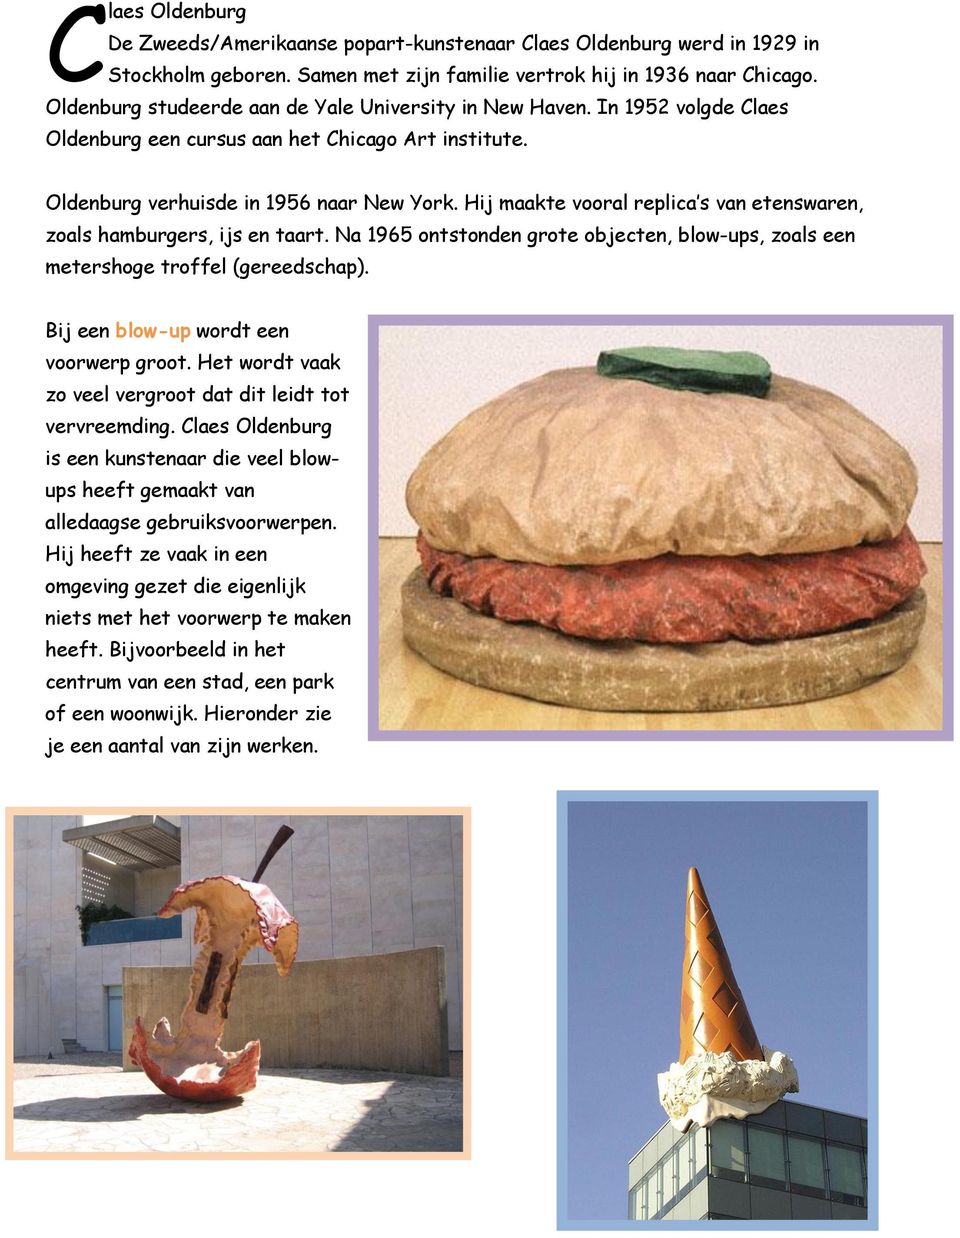 Hij maakte vooral replica s van etenswaren, zoals hamburgers, ijs en taart. Na 1965 ontstonden grote objecten, blow-ups, zoals een metershoge troffel (gereedschap).